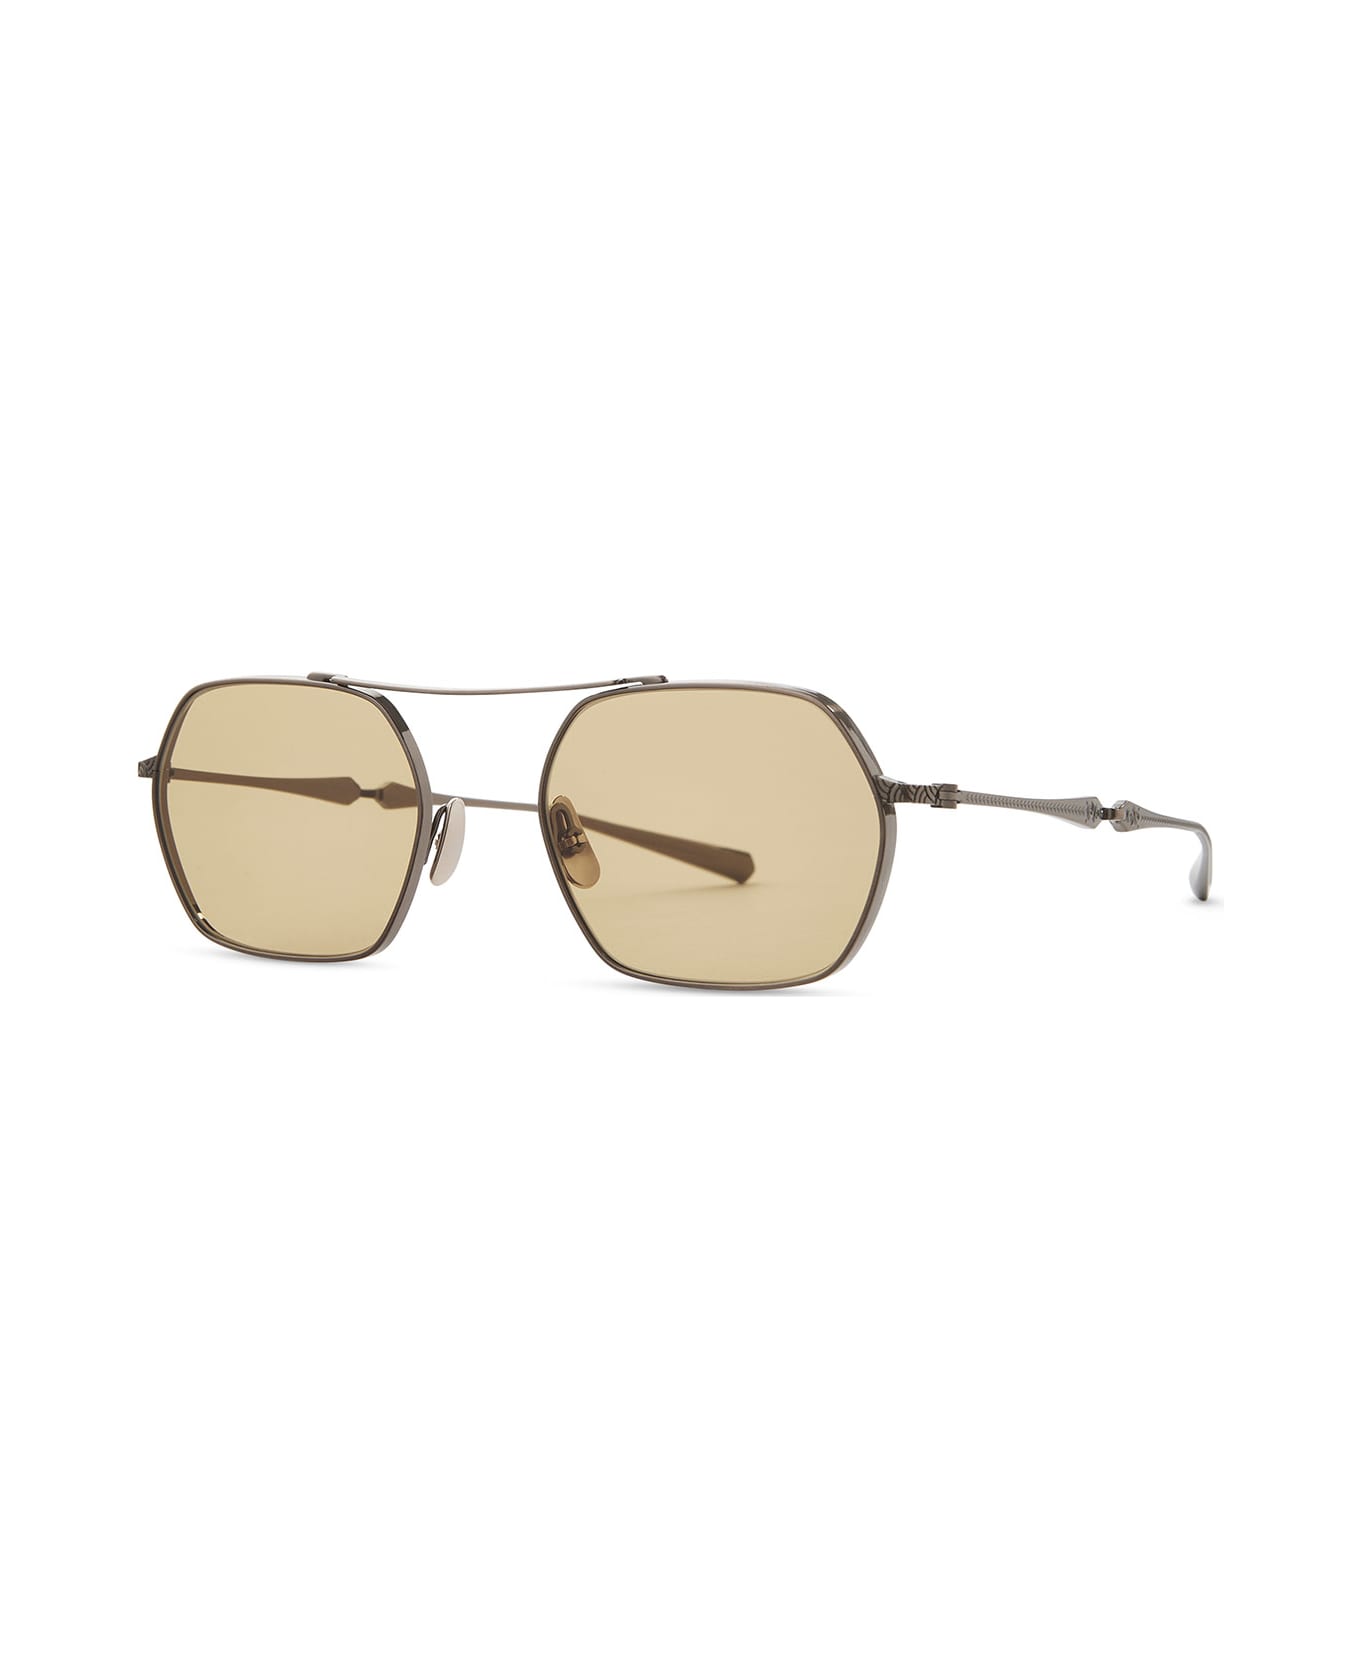 Mr. Leight Ryder S 12k White Gold Sunglasses -  12K White Gold